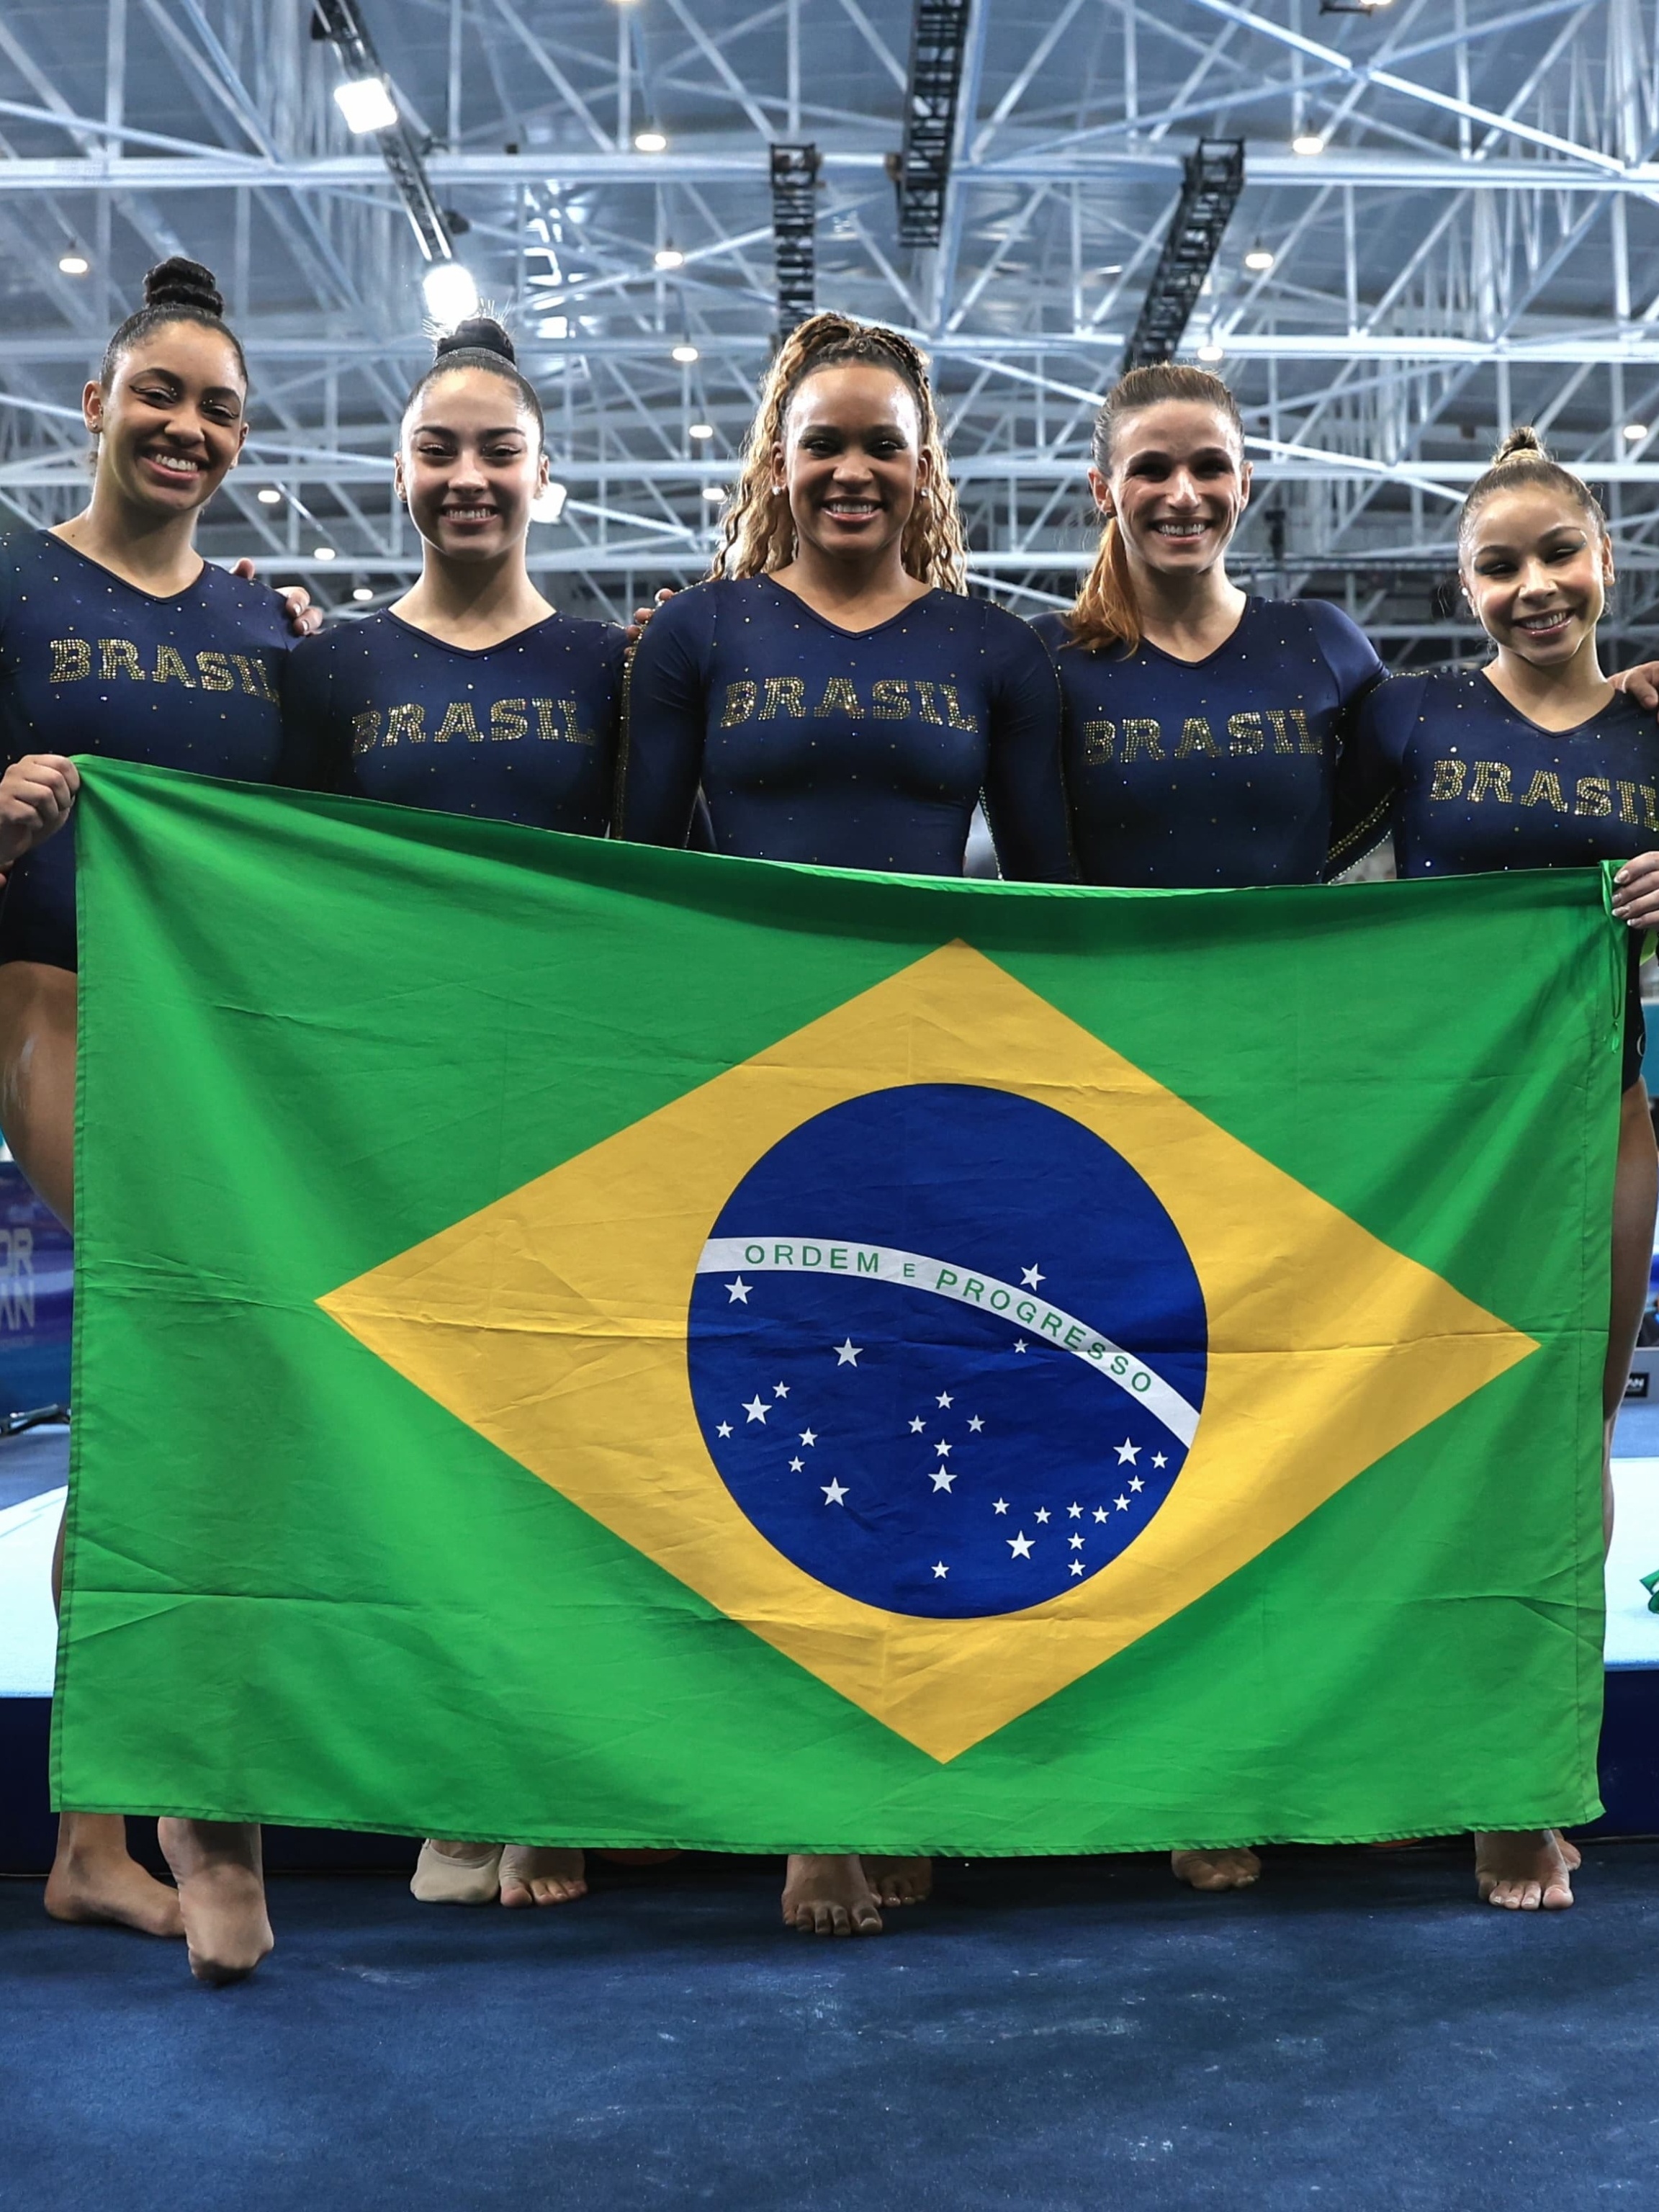 Brasil e Chile disputam a final a medalha de ouro no futebol - O Progresso